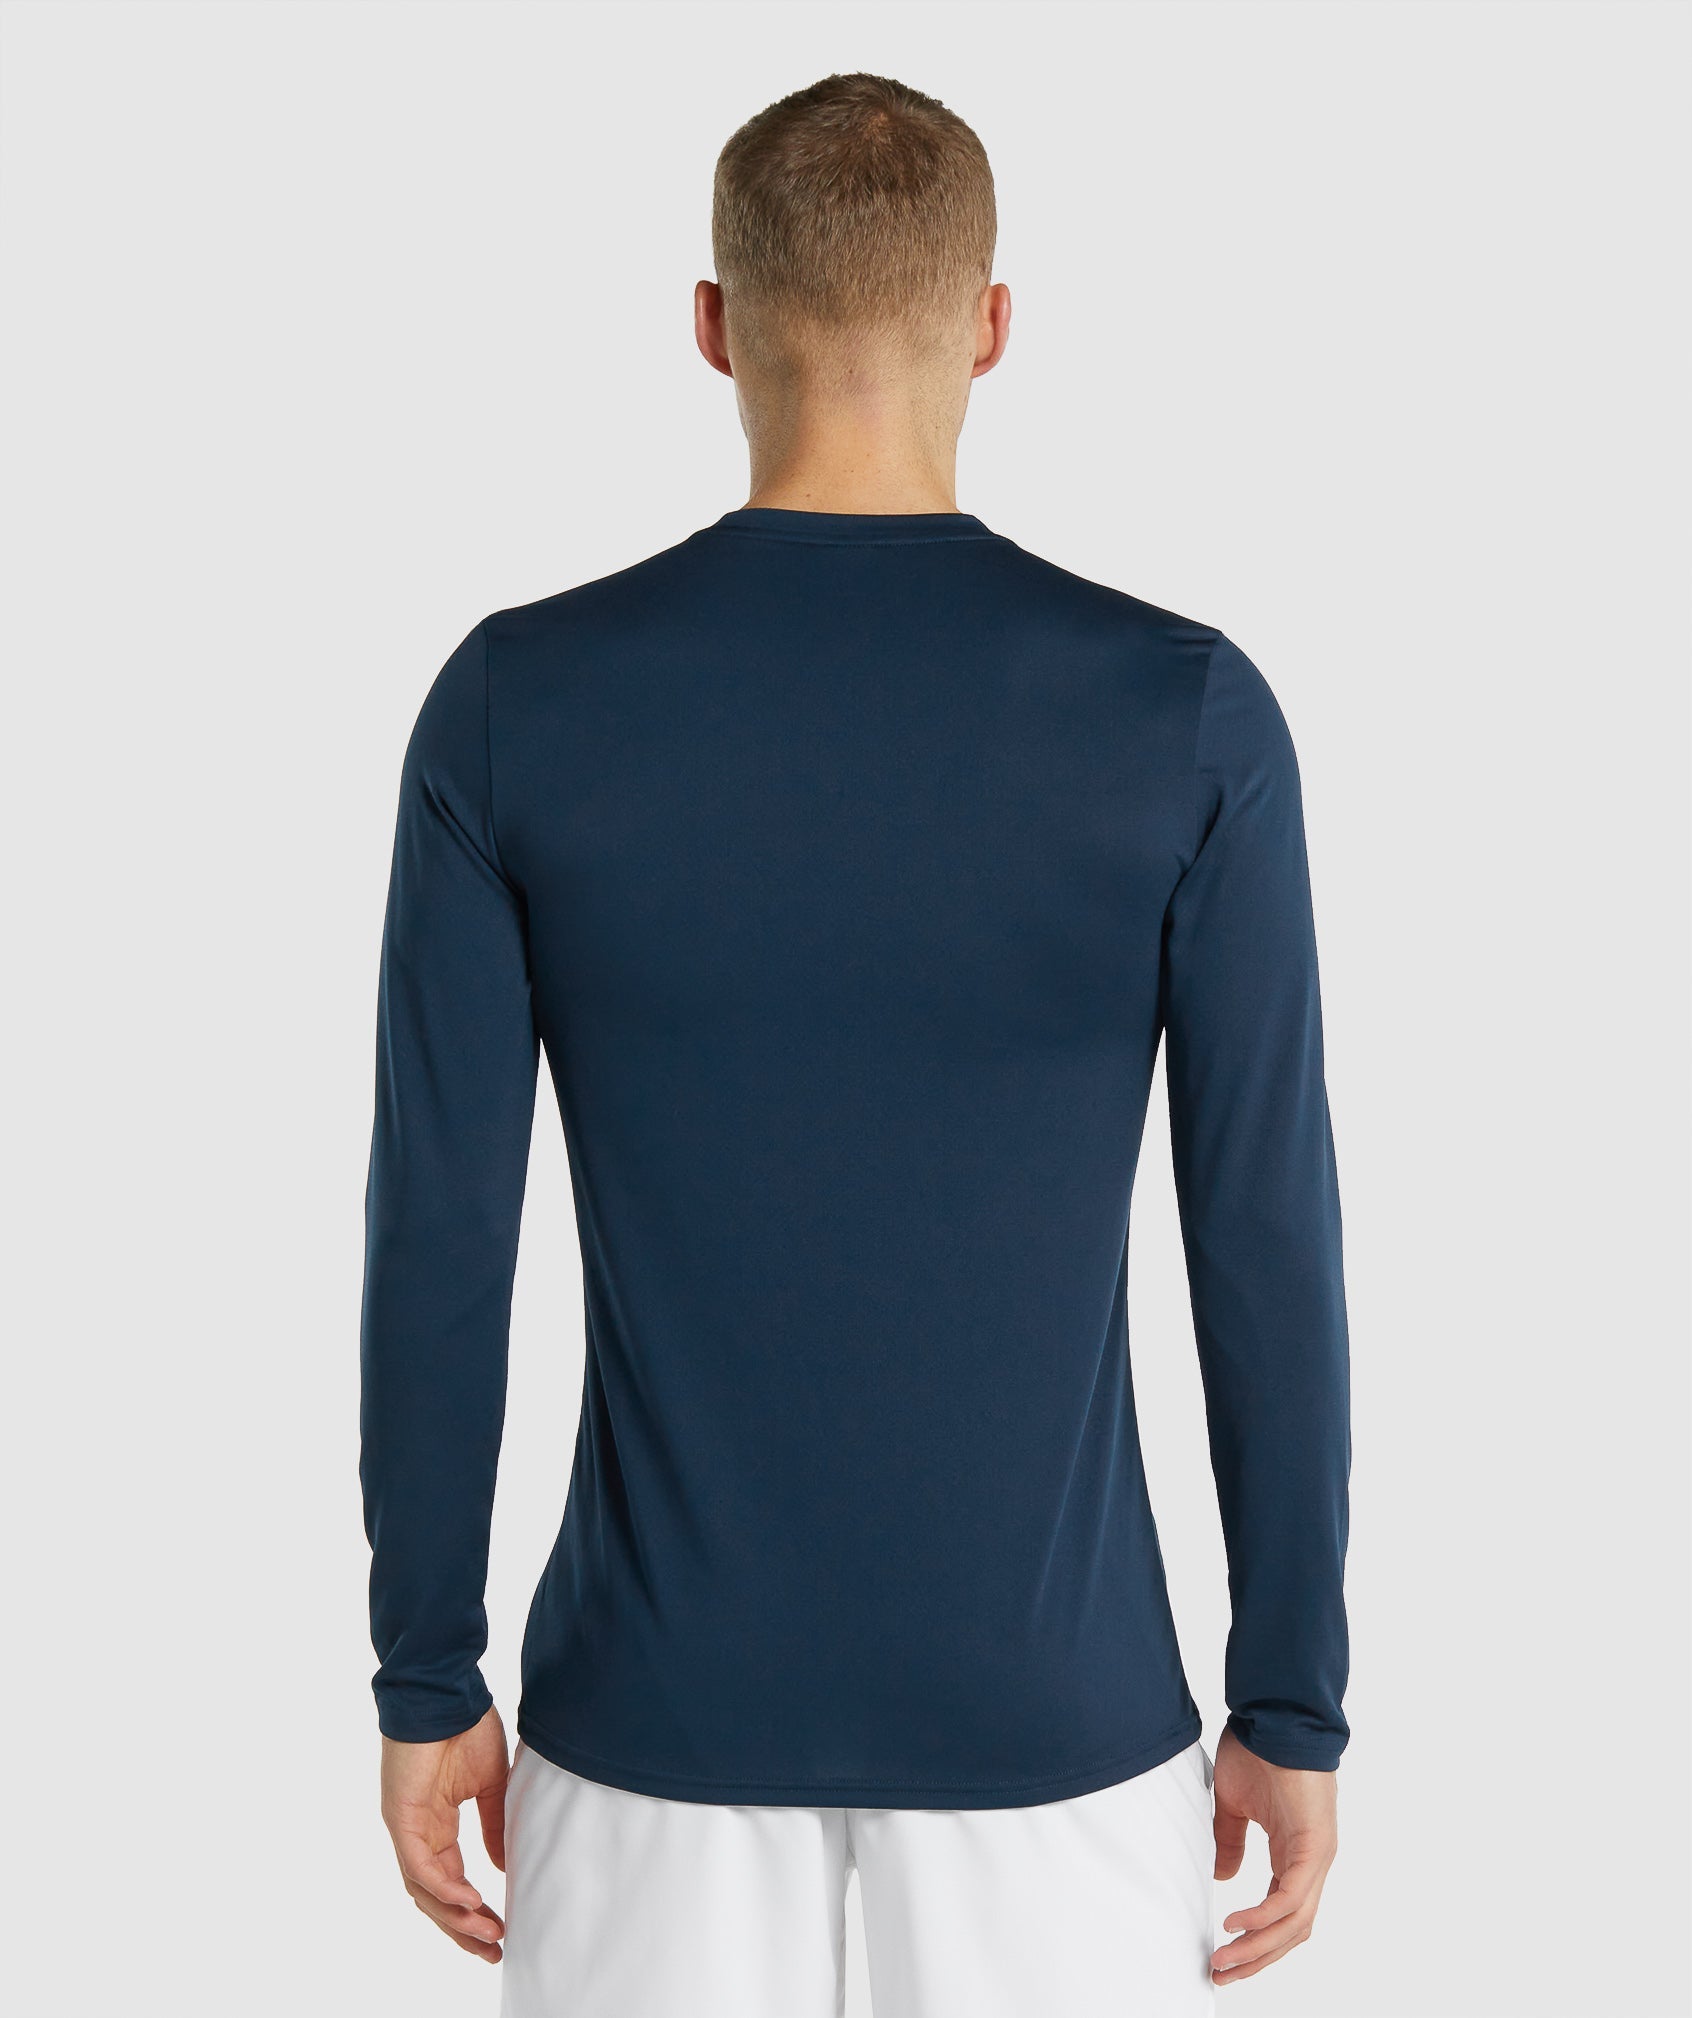 Gymshark Arrival Long Sleeve T-shirts Herren Navy | 3274968-CR